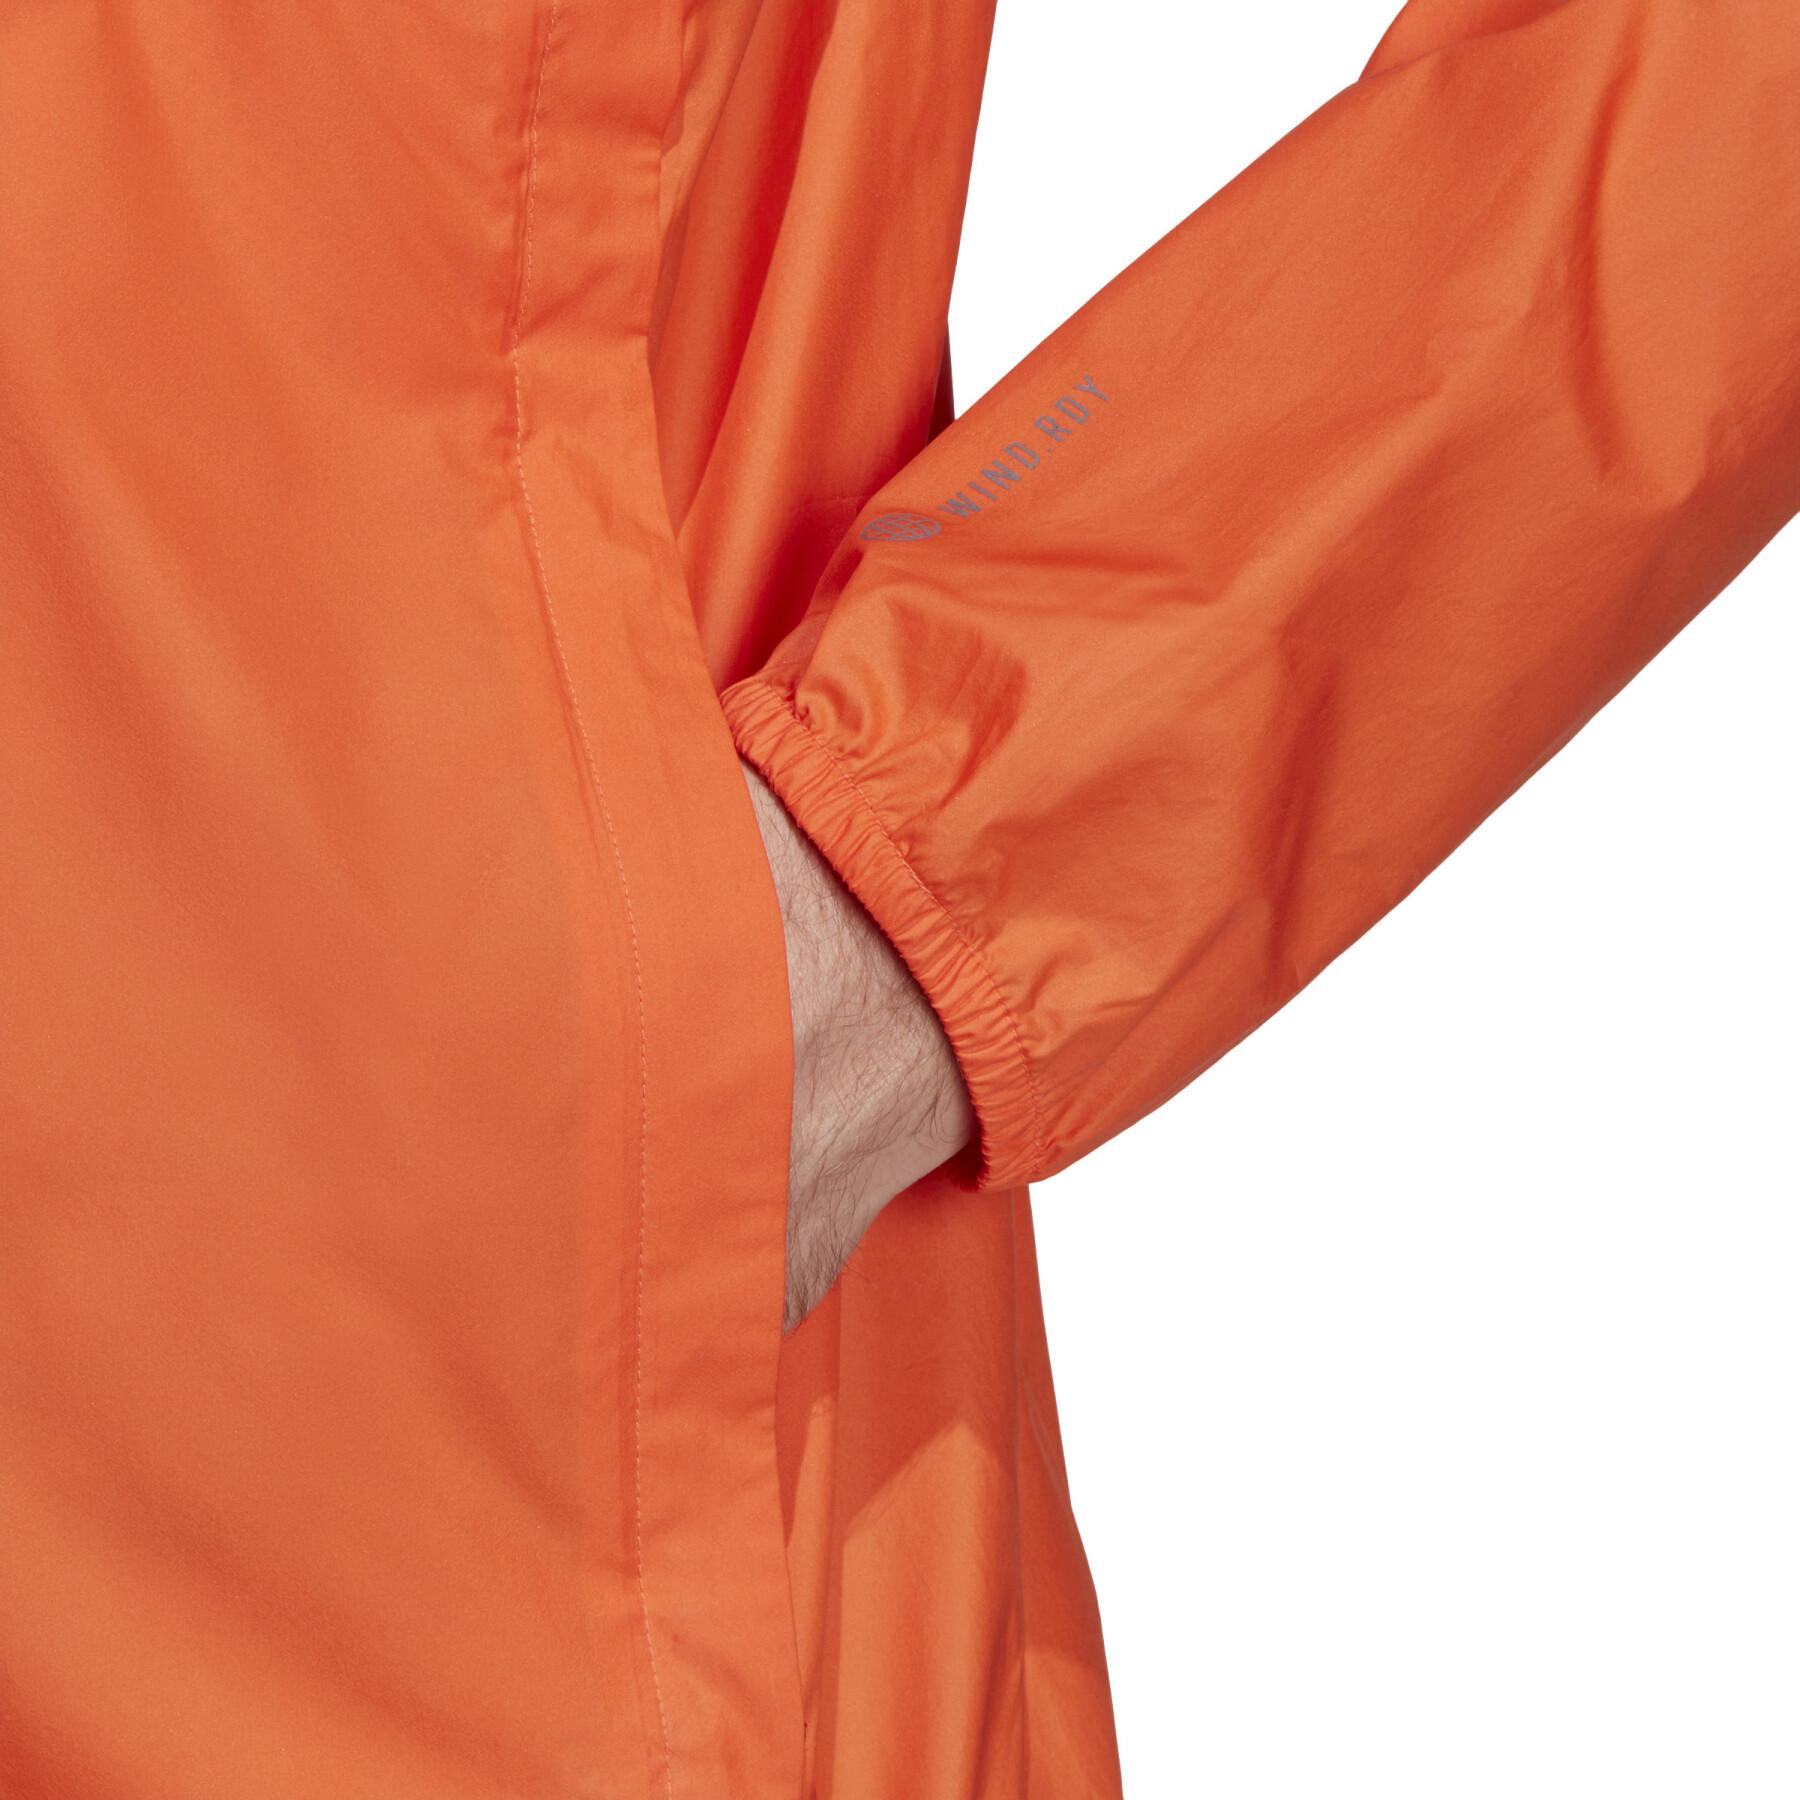 Waterproof jacket adidas Terrex Multi